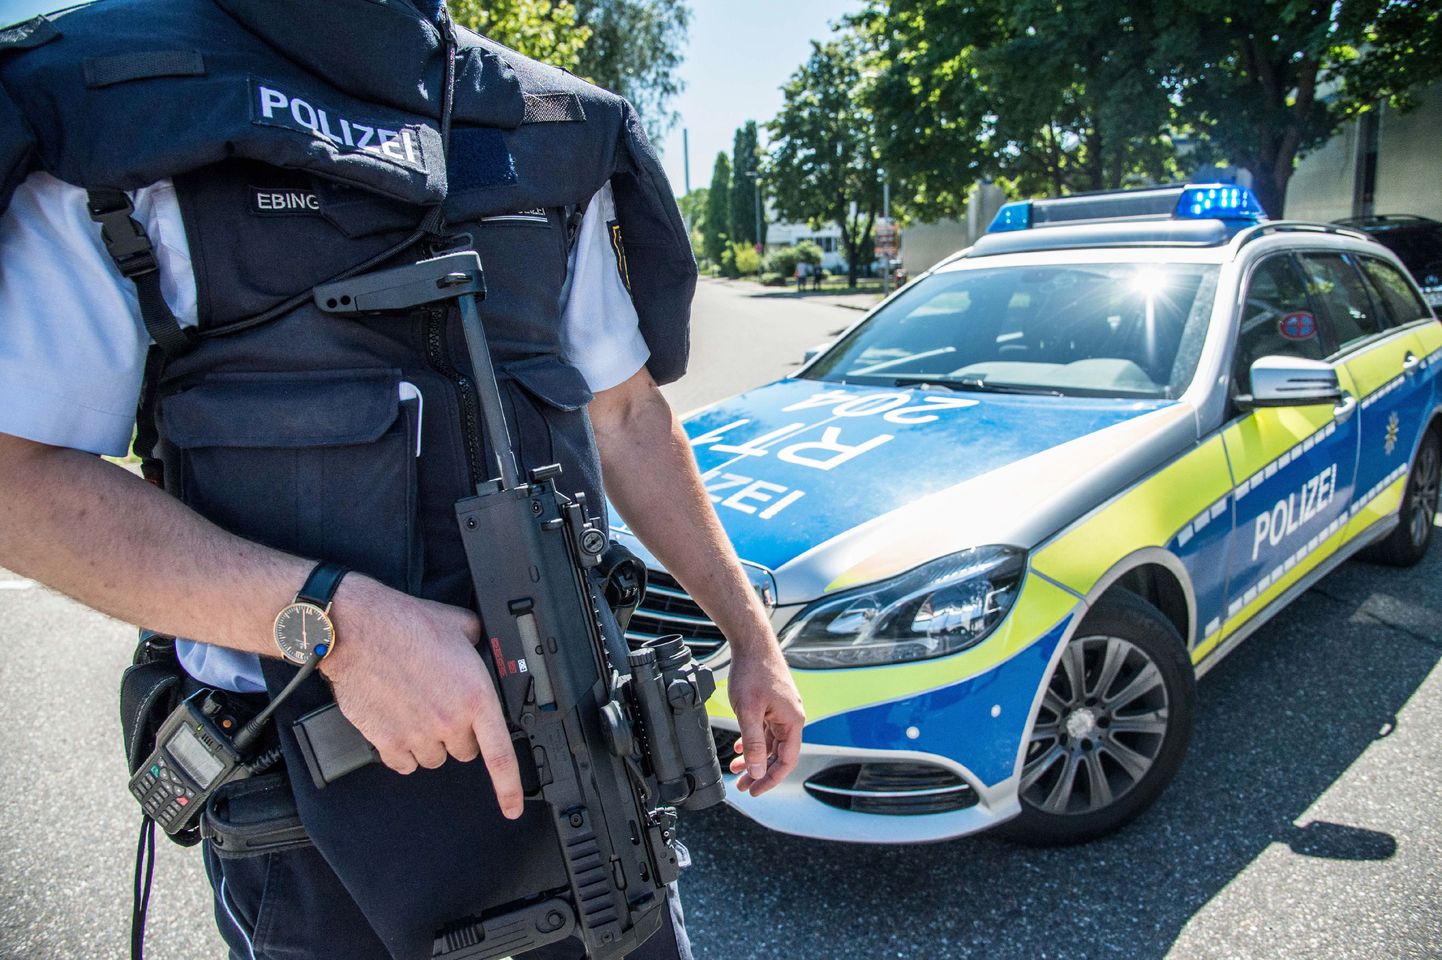 Politsei täna Esslingenis kooli ees valves.